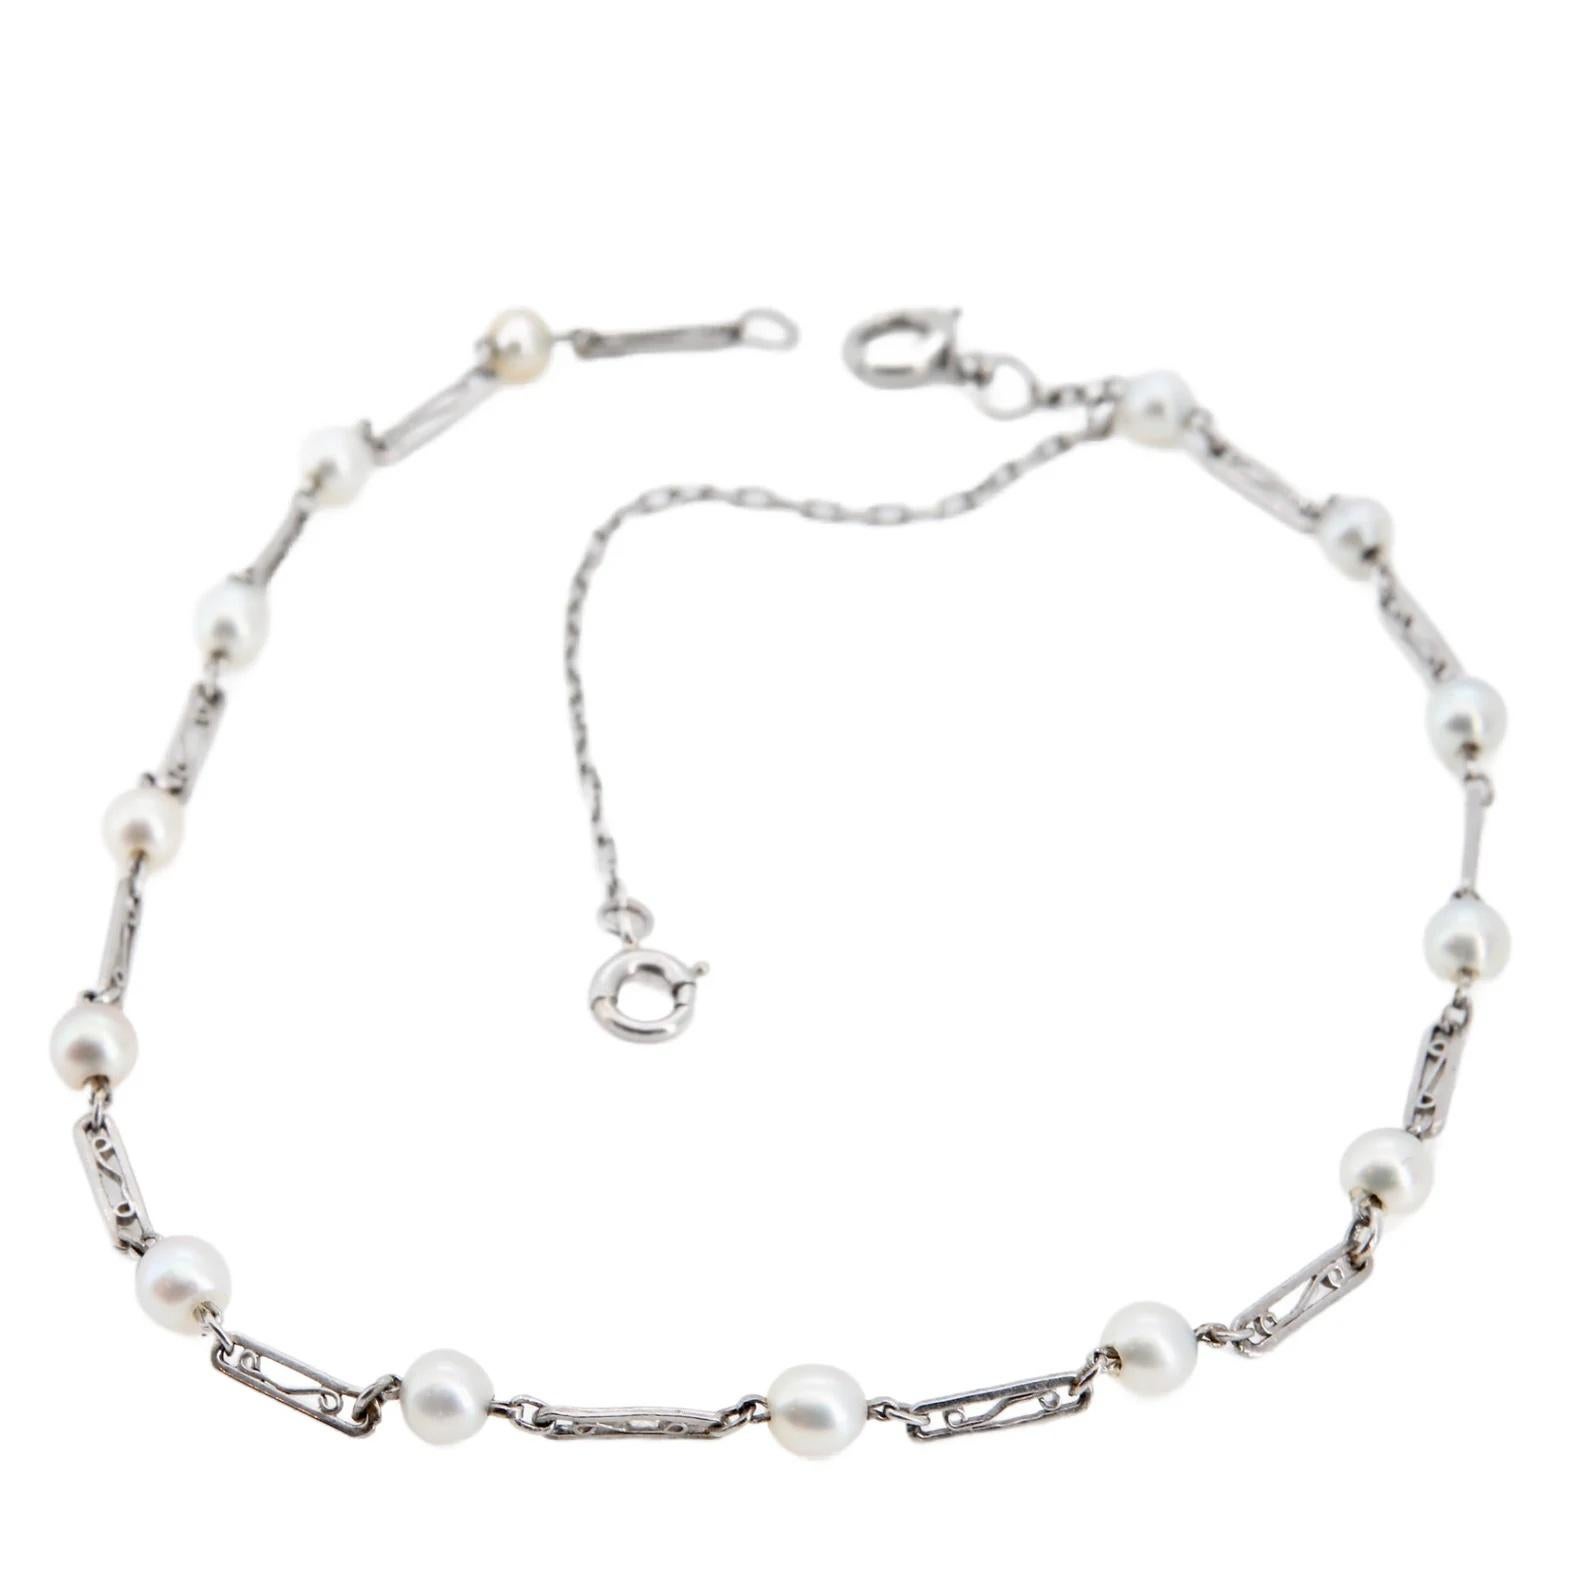 Ein Art-Deco-Armband mit natürlichen Perlen und filigranen Gliedern aus Platin. Bestehend aus handgefertigten rechteckigen Gliedern mit filigraner Schnörkelarbeit und natürlichen Perlen. Die 14 natürlichen Salzwasserperlen haben einen Durchmesser